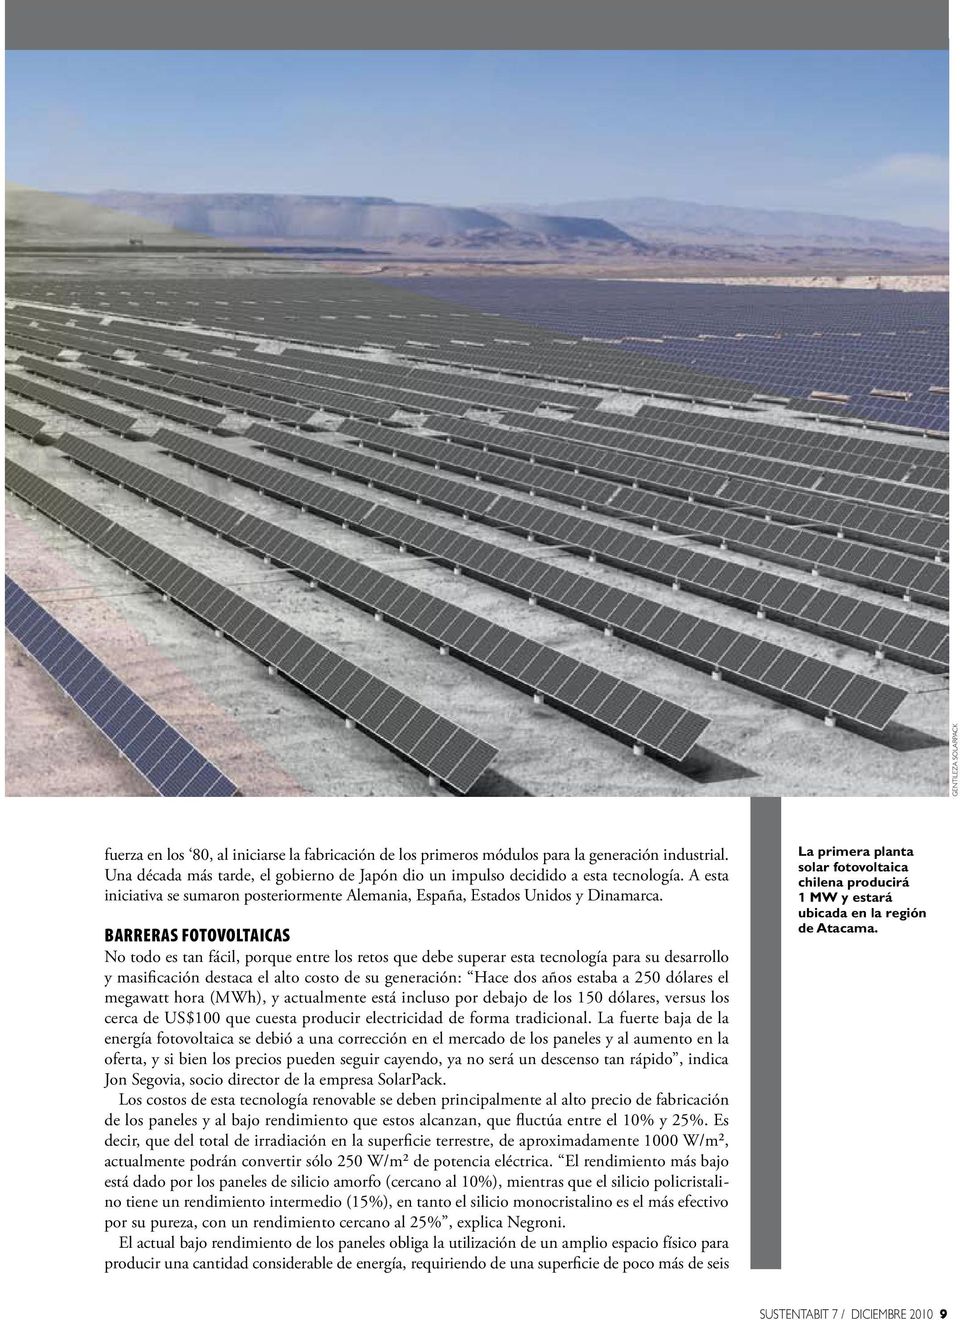 BARRERAS FOTOVOLTAICAS La primera planta solar fotovoltaica chilena producirá 1 MW y estará ubicada en la región de Atacama.